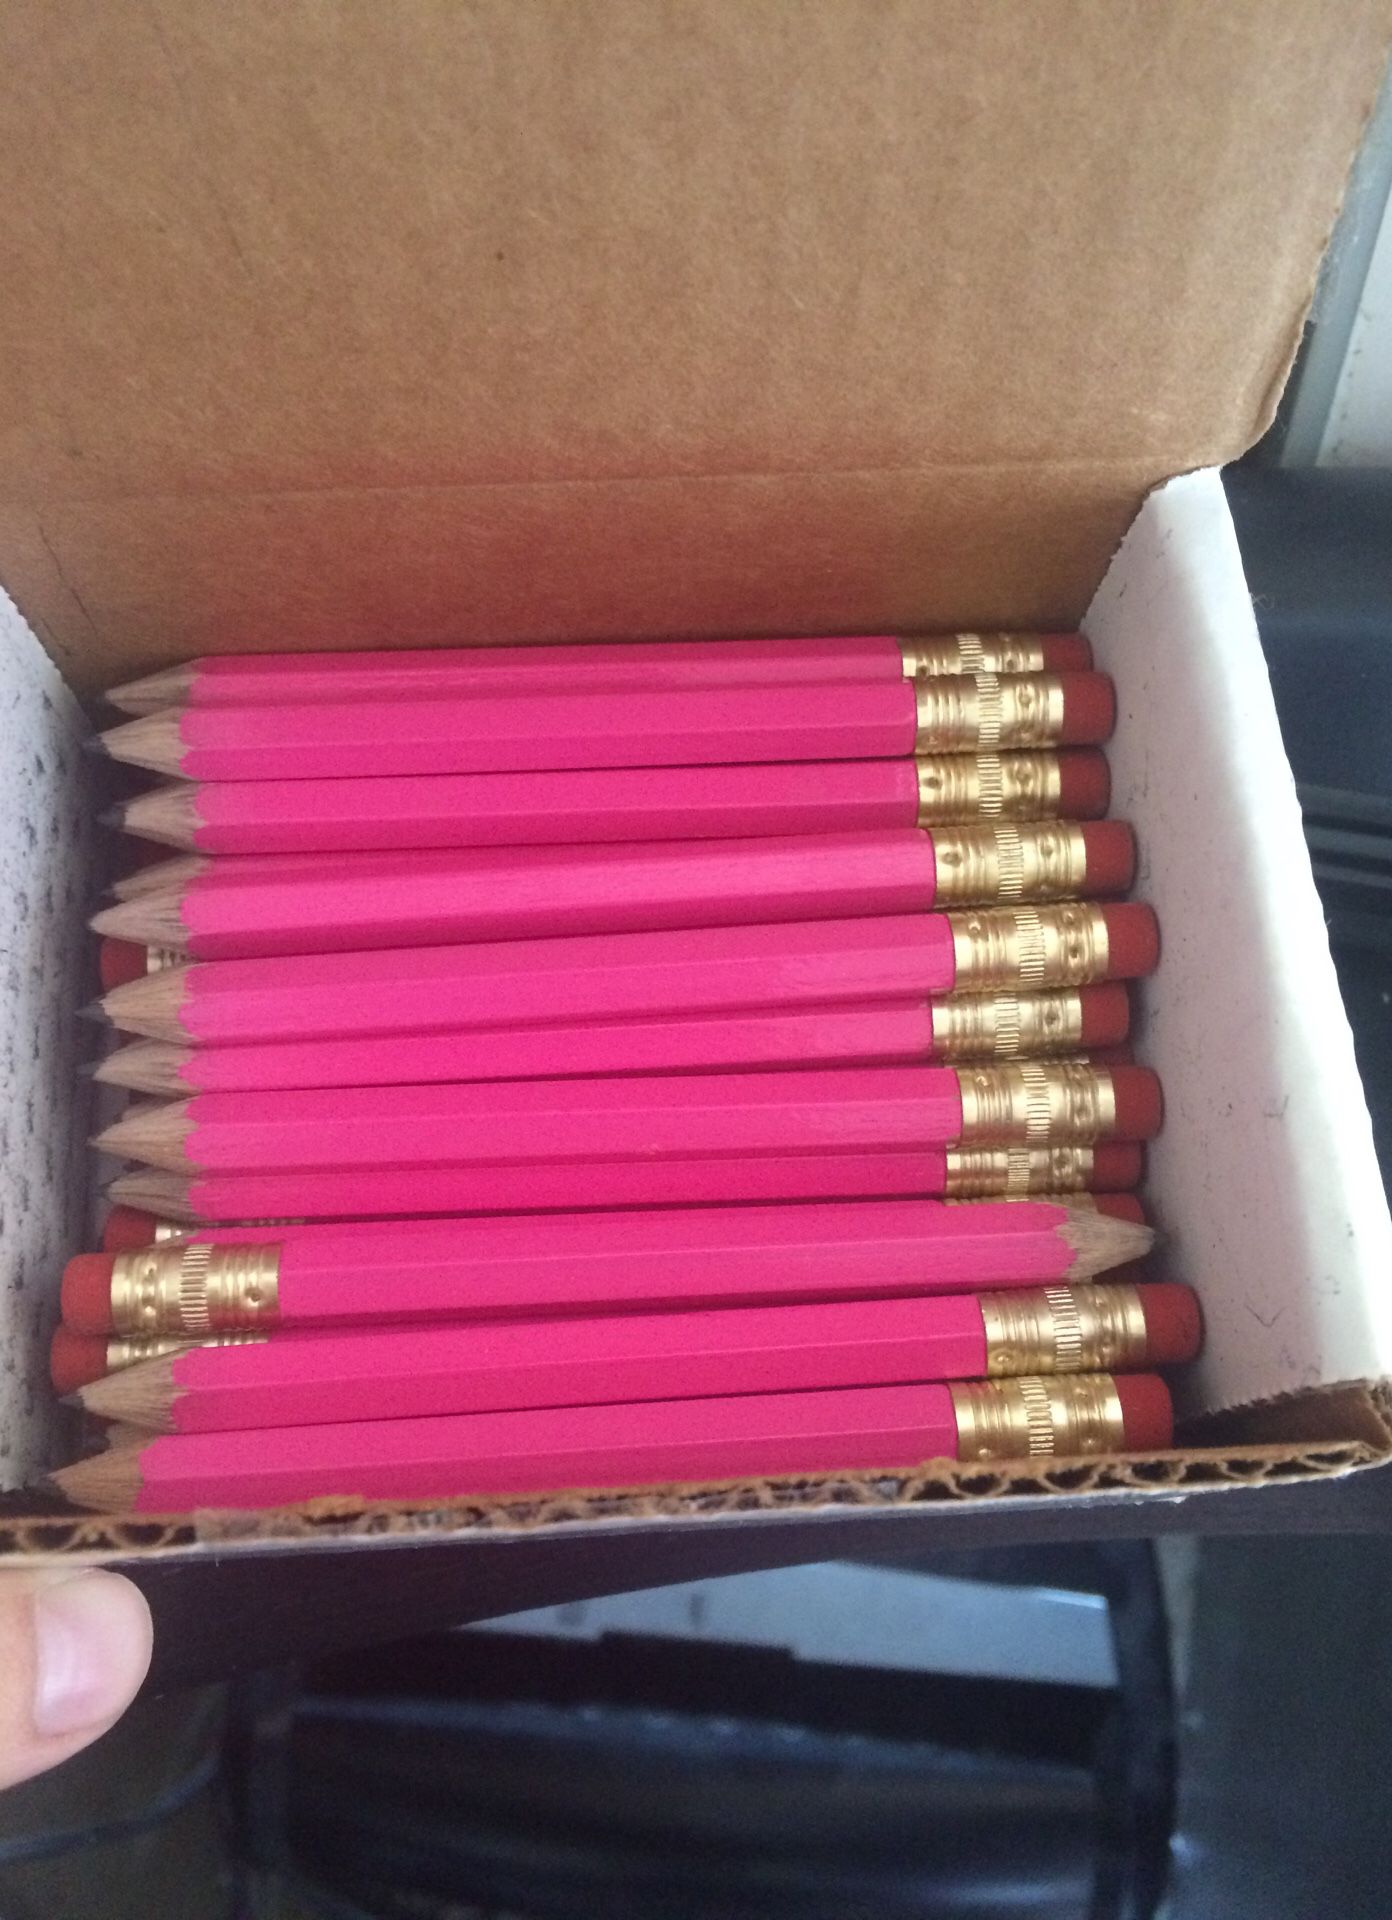 Mini pink pencils